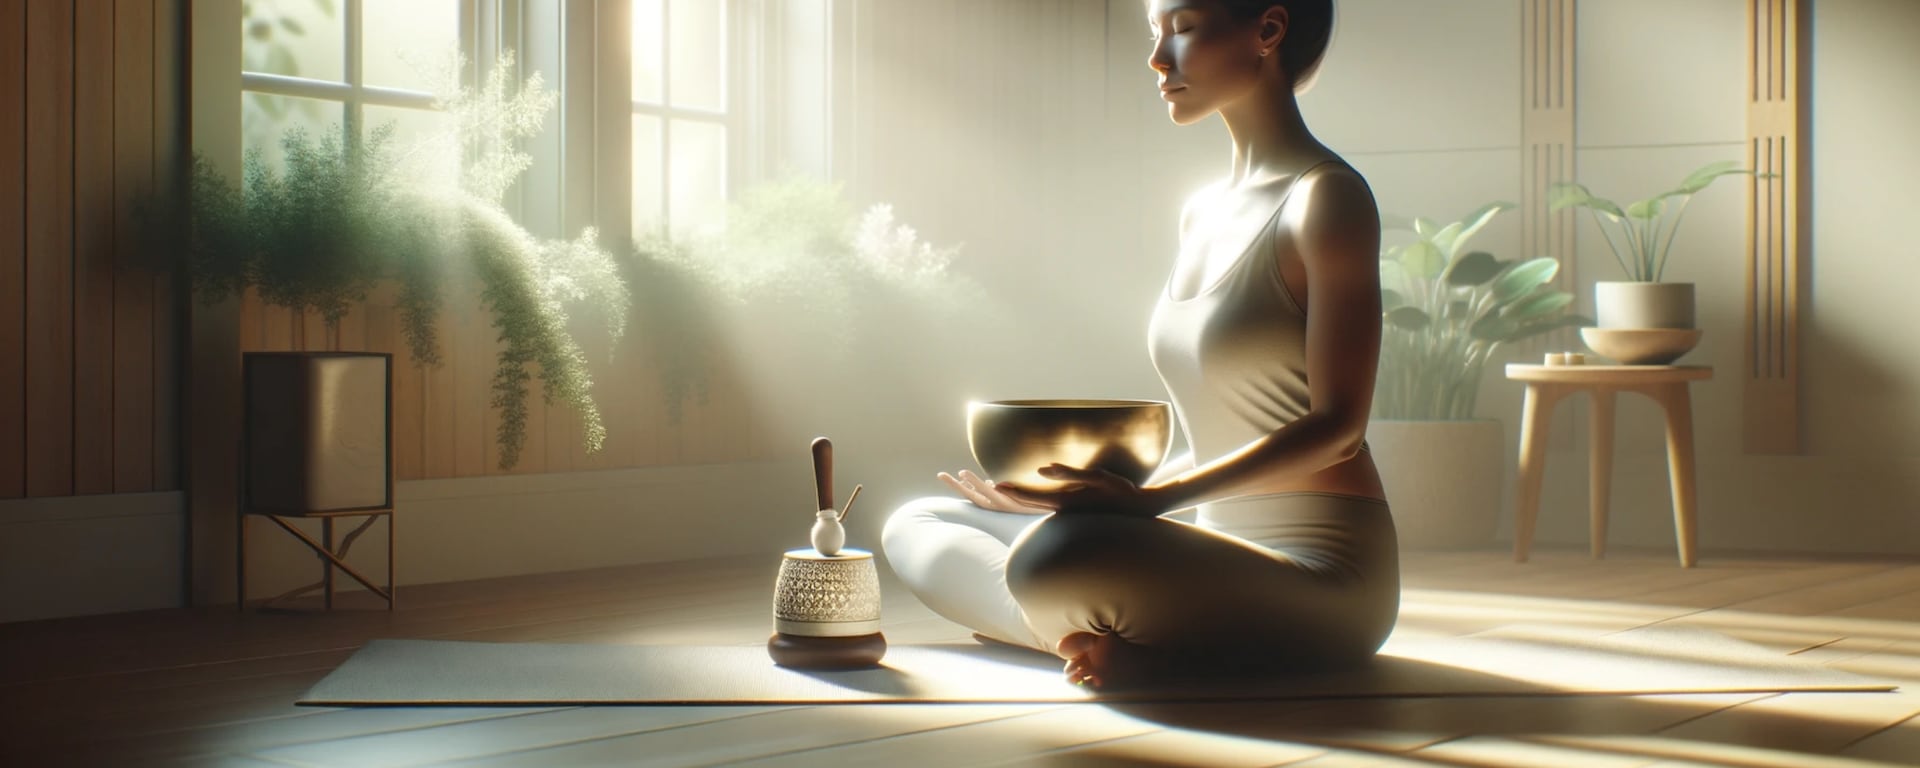 Concierto meditativo: Experimenta la relajación con la meditación sonora y reduce el estrés